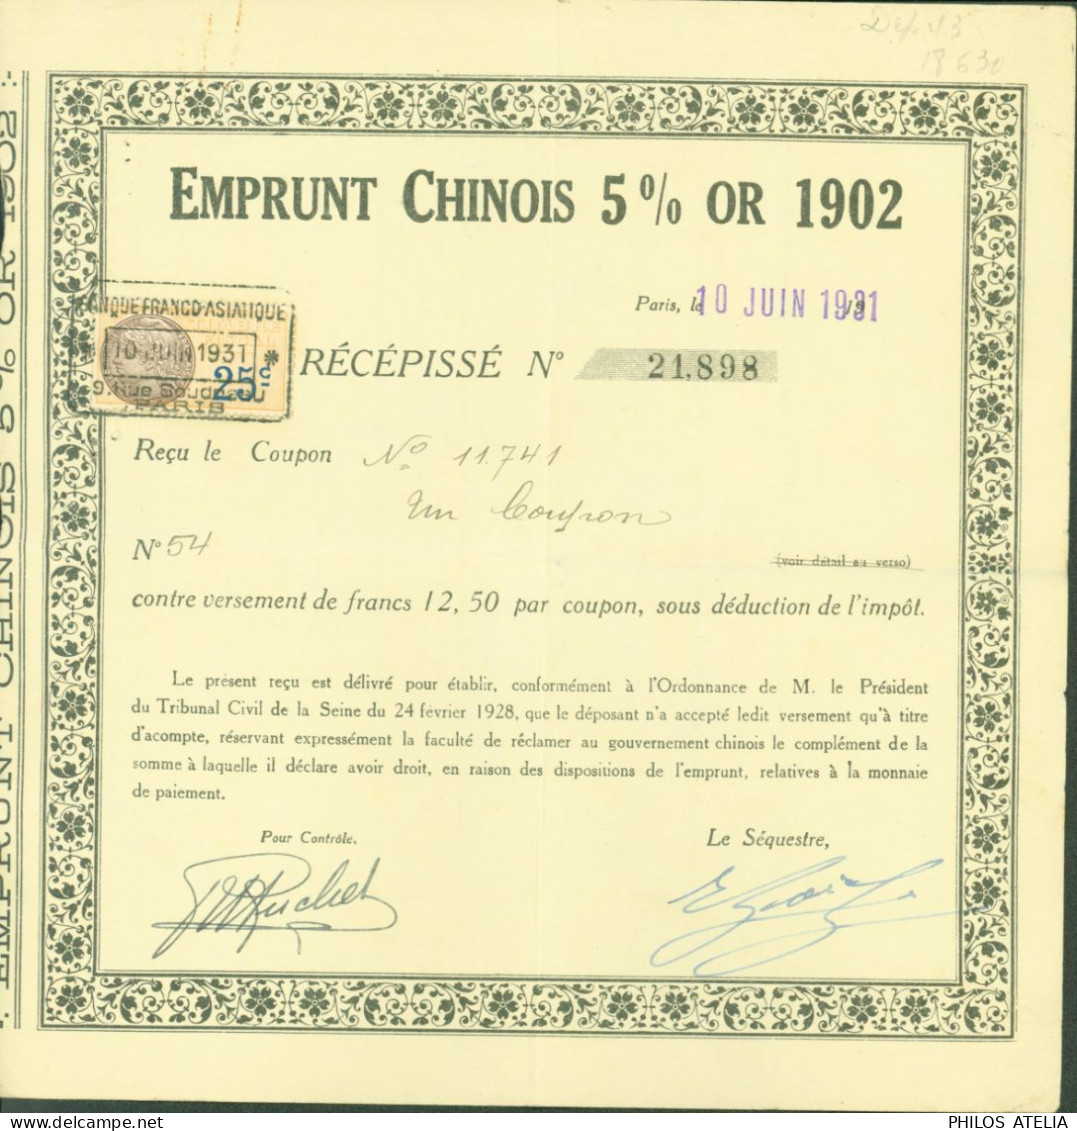 Obligation Emprunt Chinois 5% Or 1902 Paris 10 JUIN 1931 Timbre Fiscal 25ct Daucy Reçu Coupon Contre Versement - Lettres & Documents